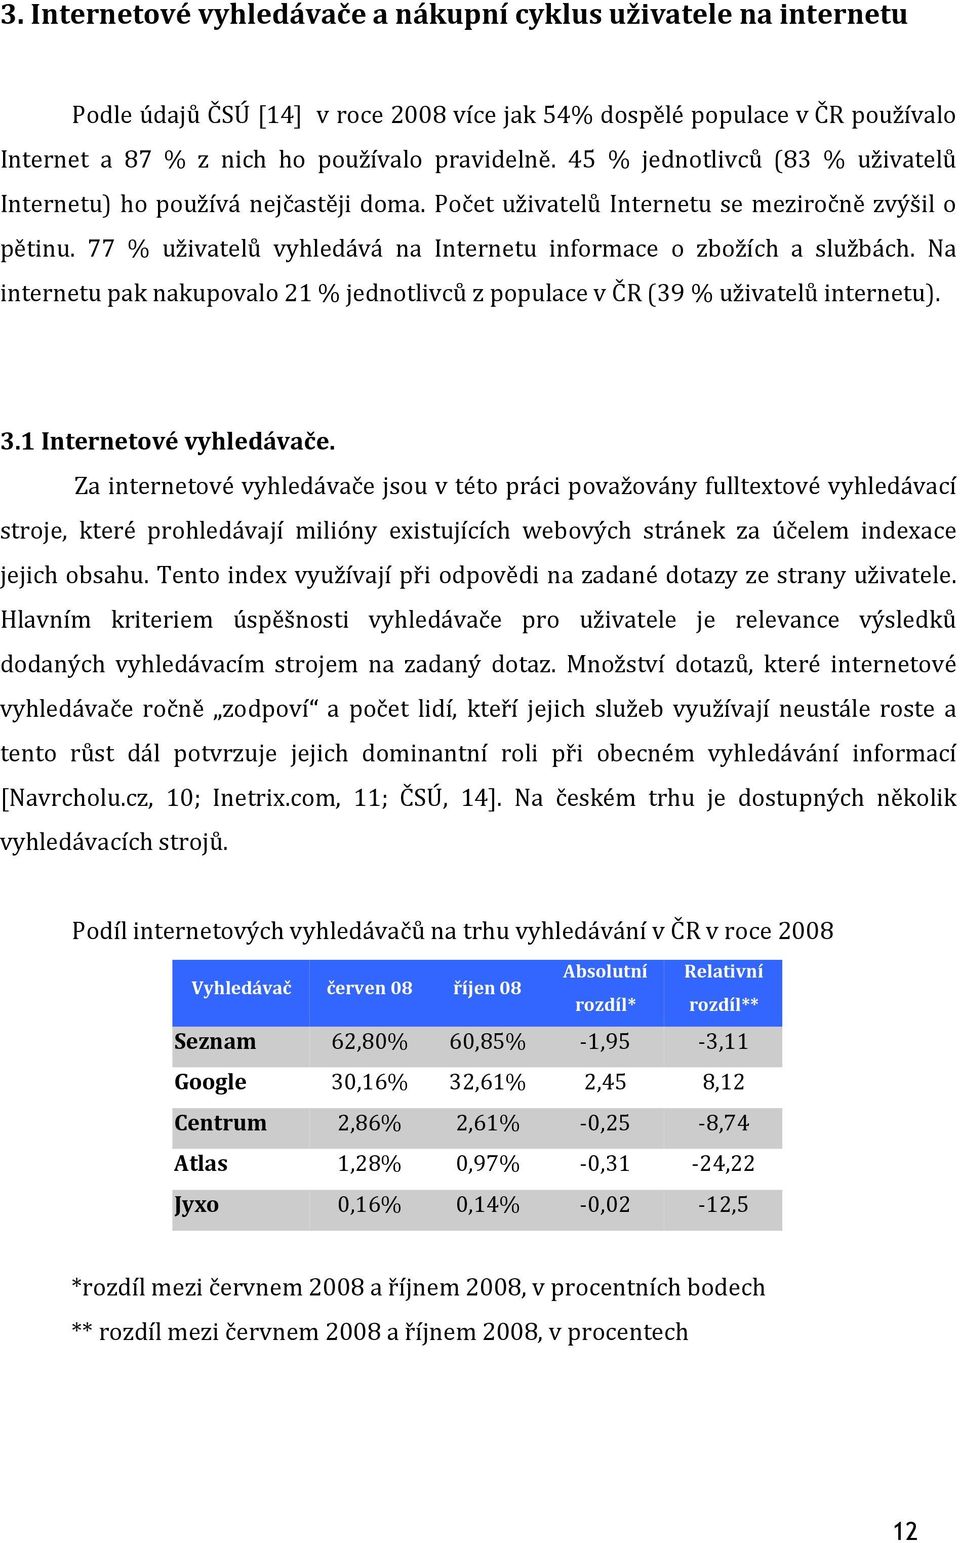 Na internetu pak nakupovalo 21 % jednotlivců z populace v ČR (39% uživatelů internetu). 3.1 Internetové vyhledávače.